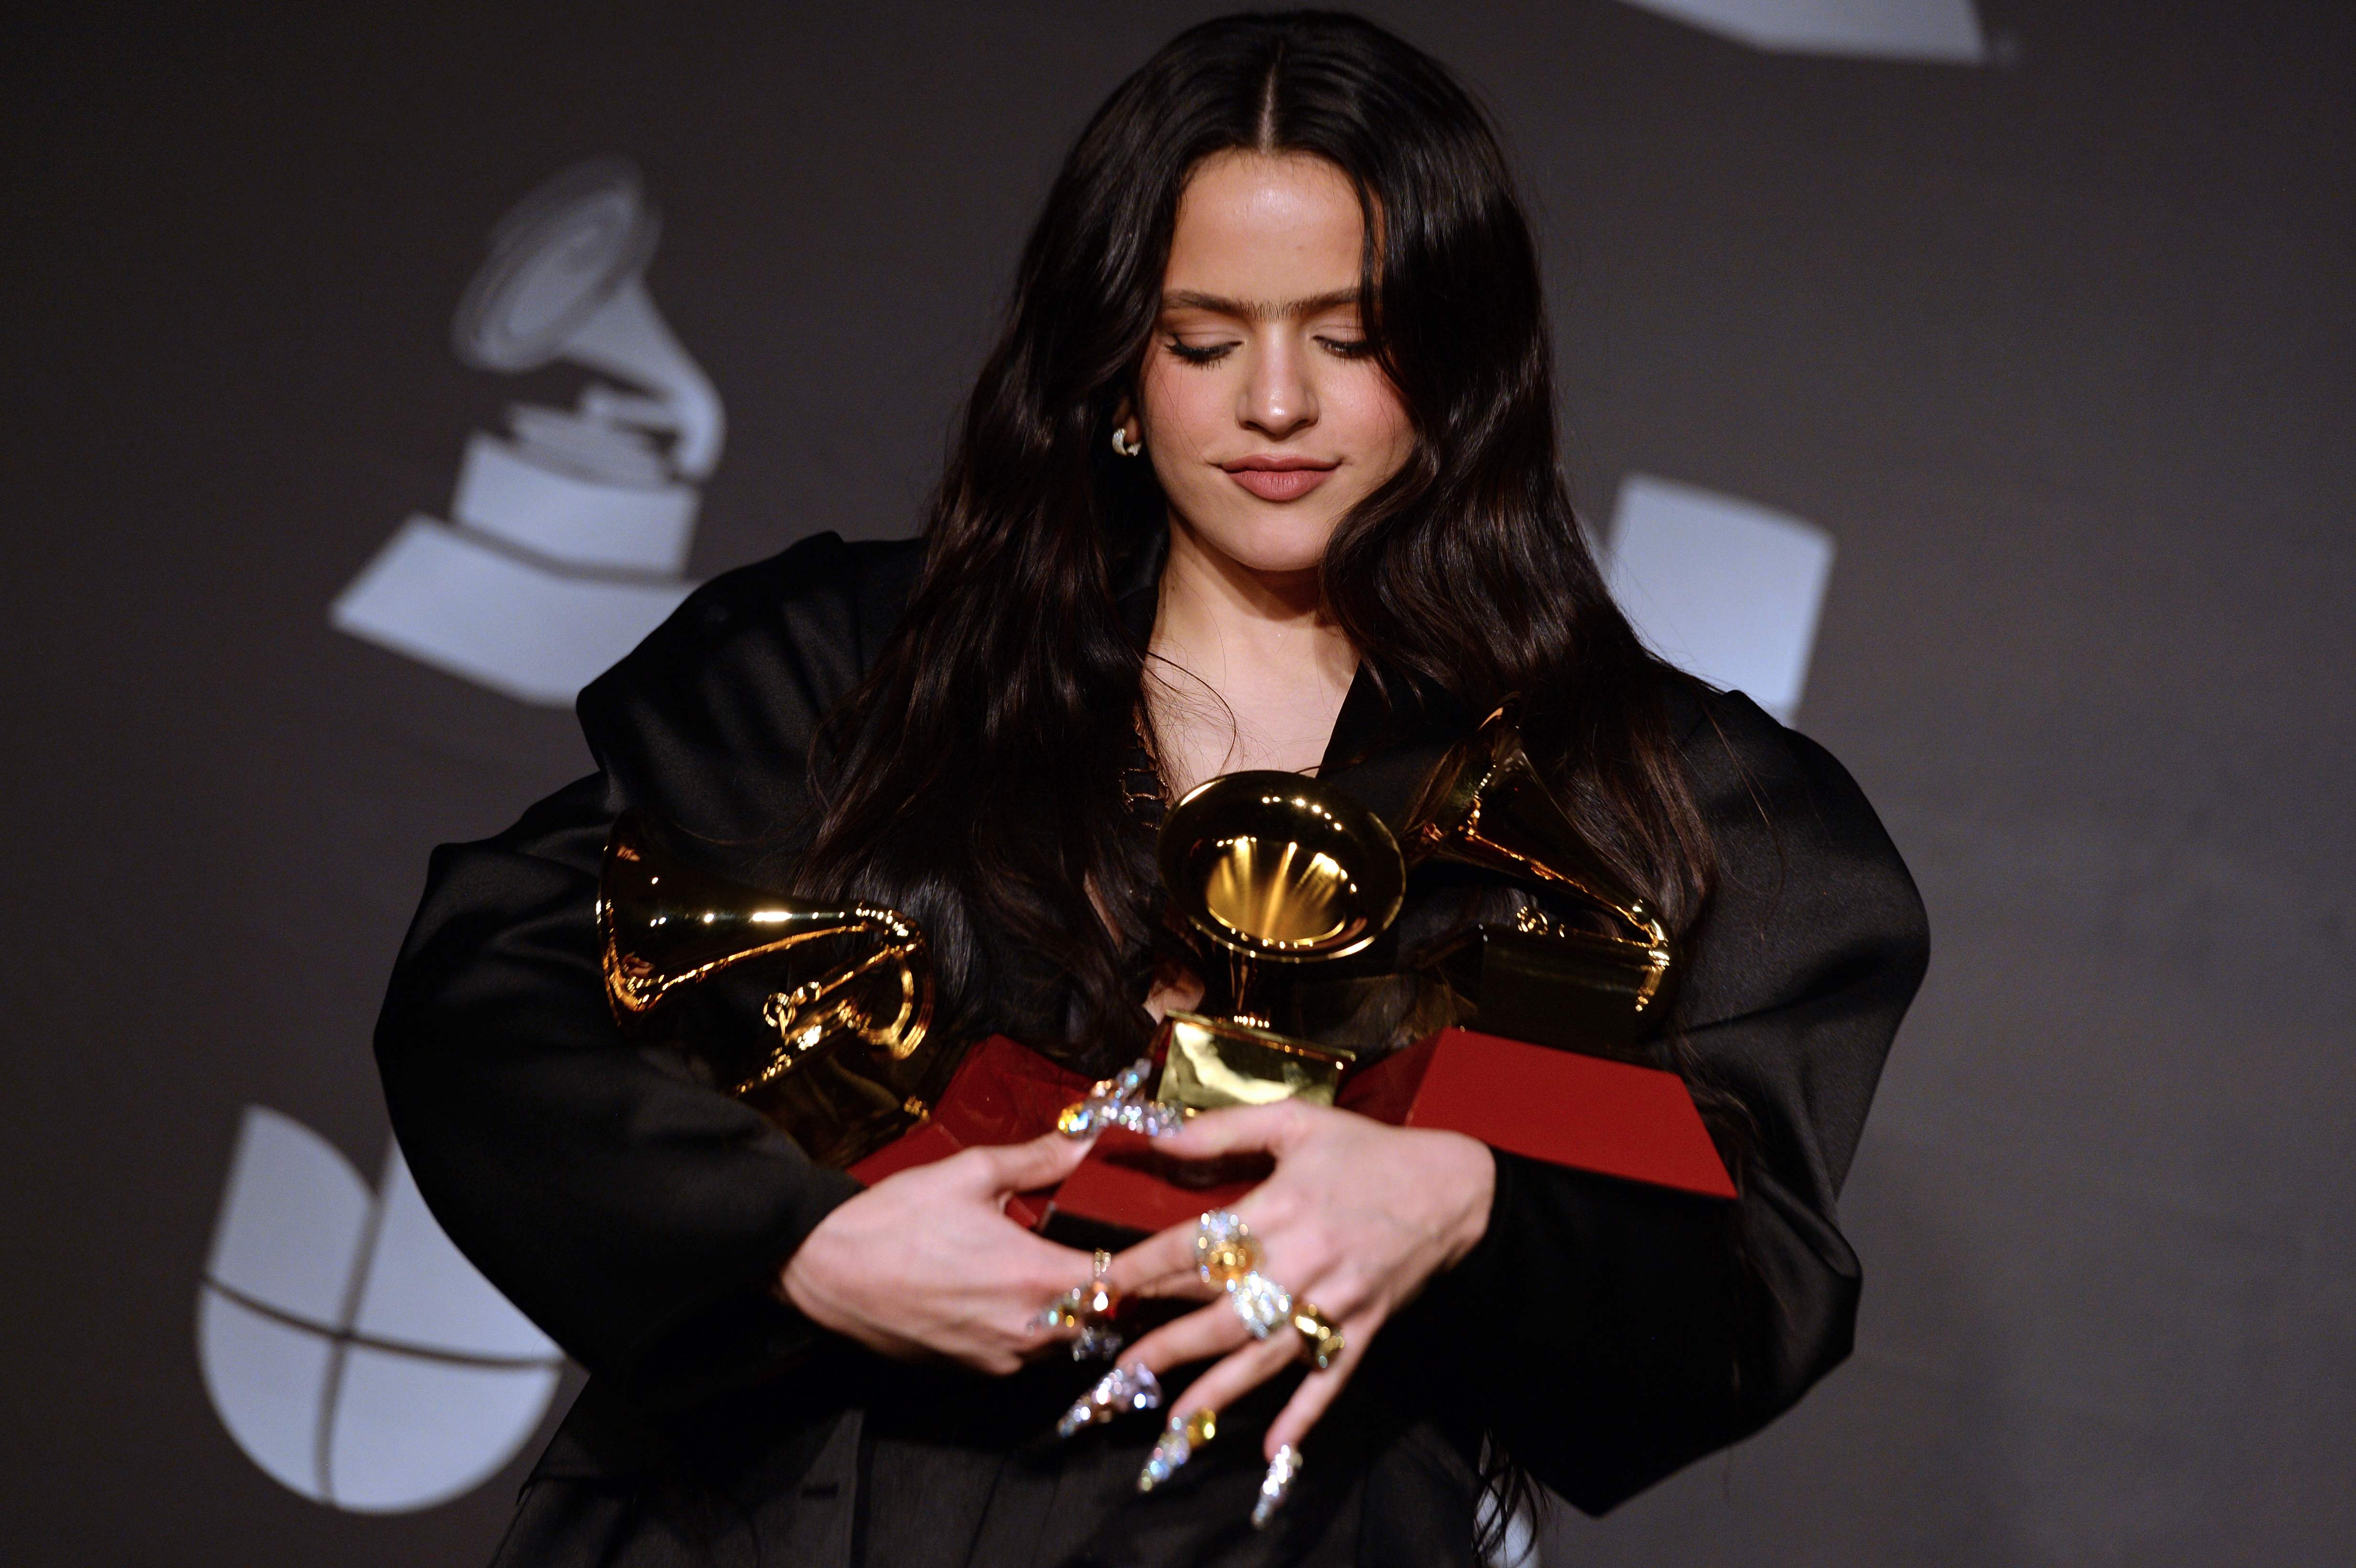 La cantante española Rosalía recibió 5 premios Latin Grammy. (Foto Prensa Libre: AFP)